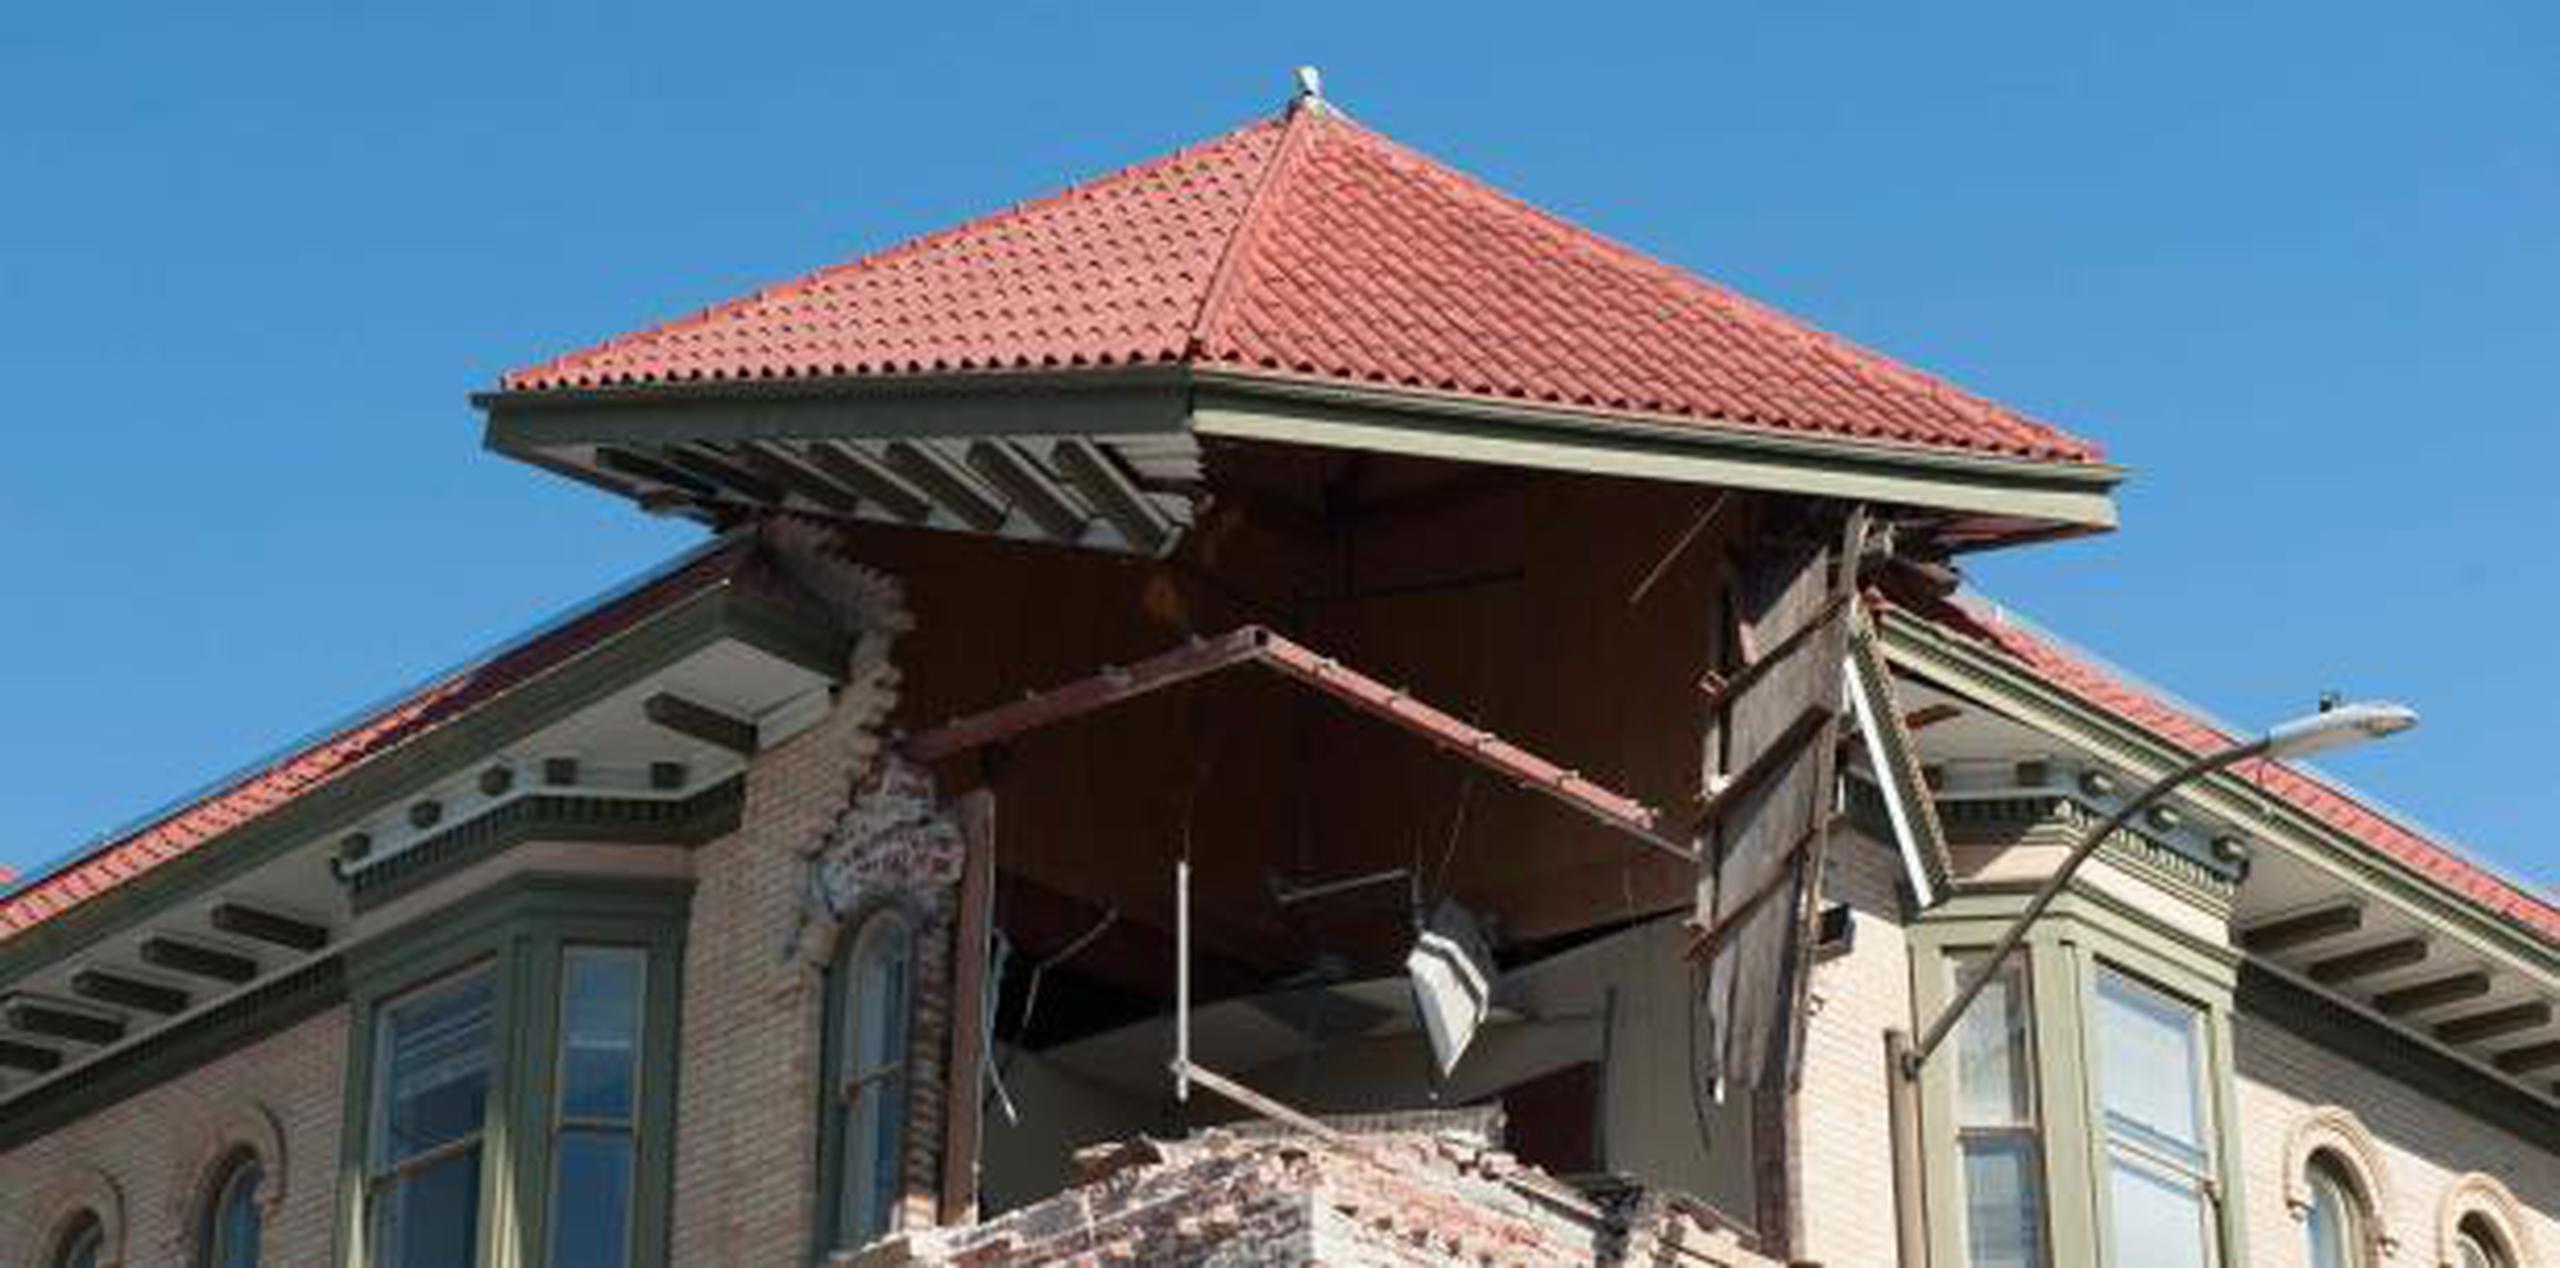 "Los terremotos son ahora comunes en el centro de Estados Unidos donde el número de magnitud 3 o mayor aumentó de un promedio de 19 por año antes de 2008 a más de 400 por año desde entonces", precisó Ryan Pollyea (EFE)